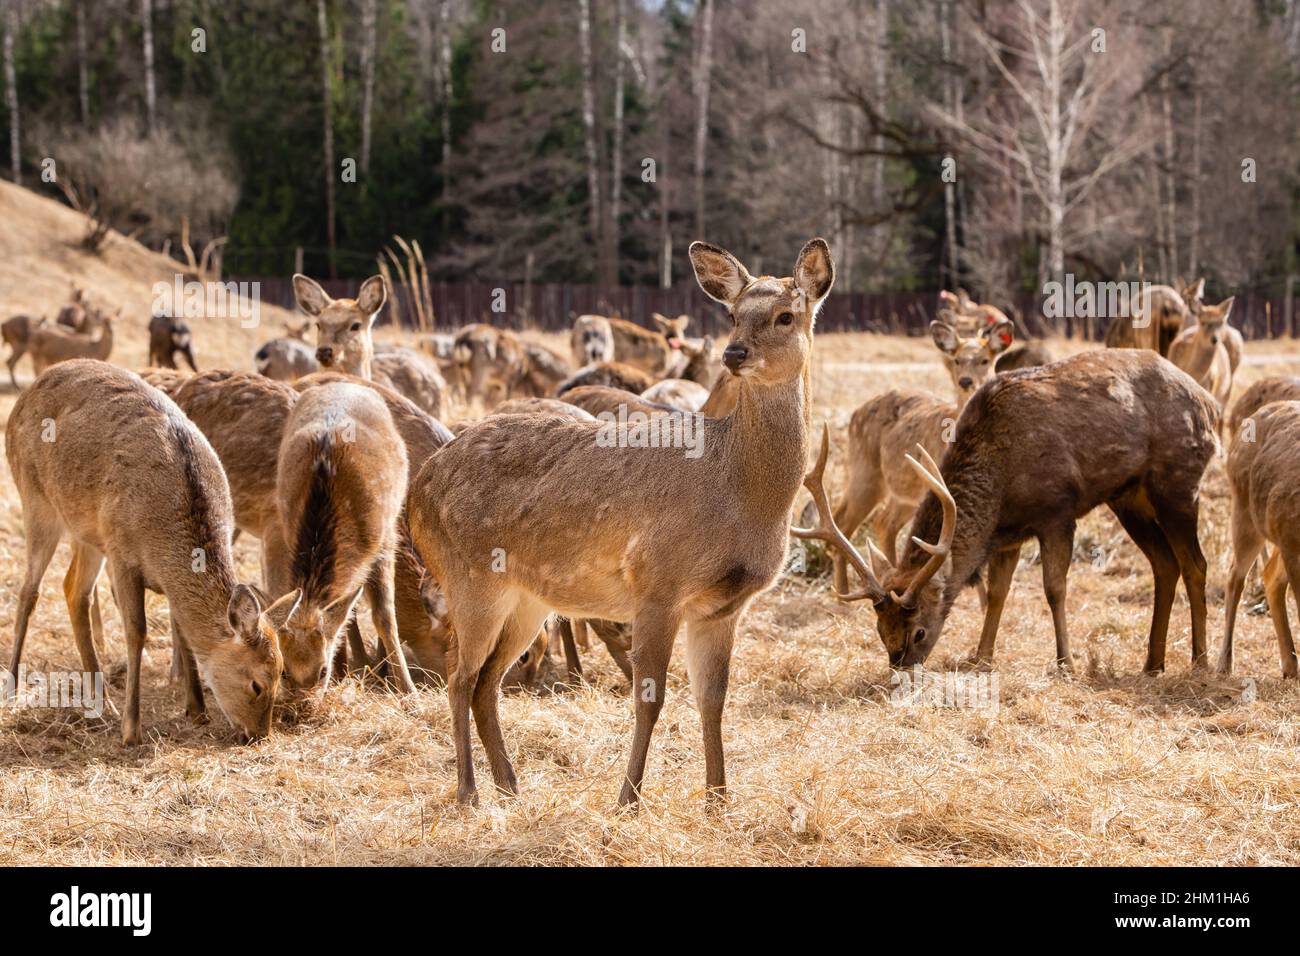 Un troupeau de cerfs rouges dans un parc de réserve en Russie. Concept de la faune protégée Banque D'Images